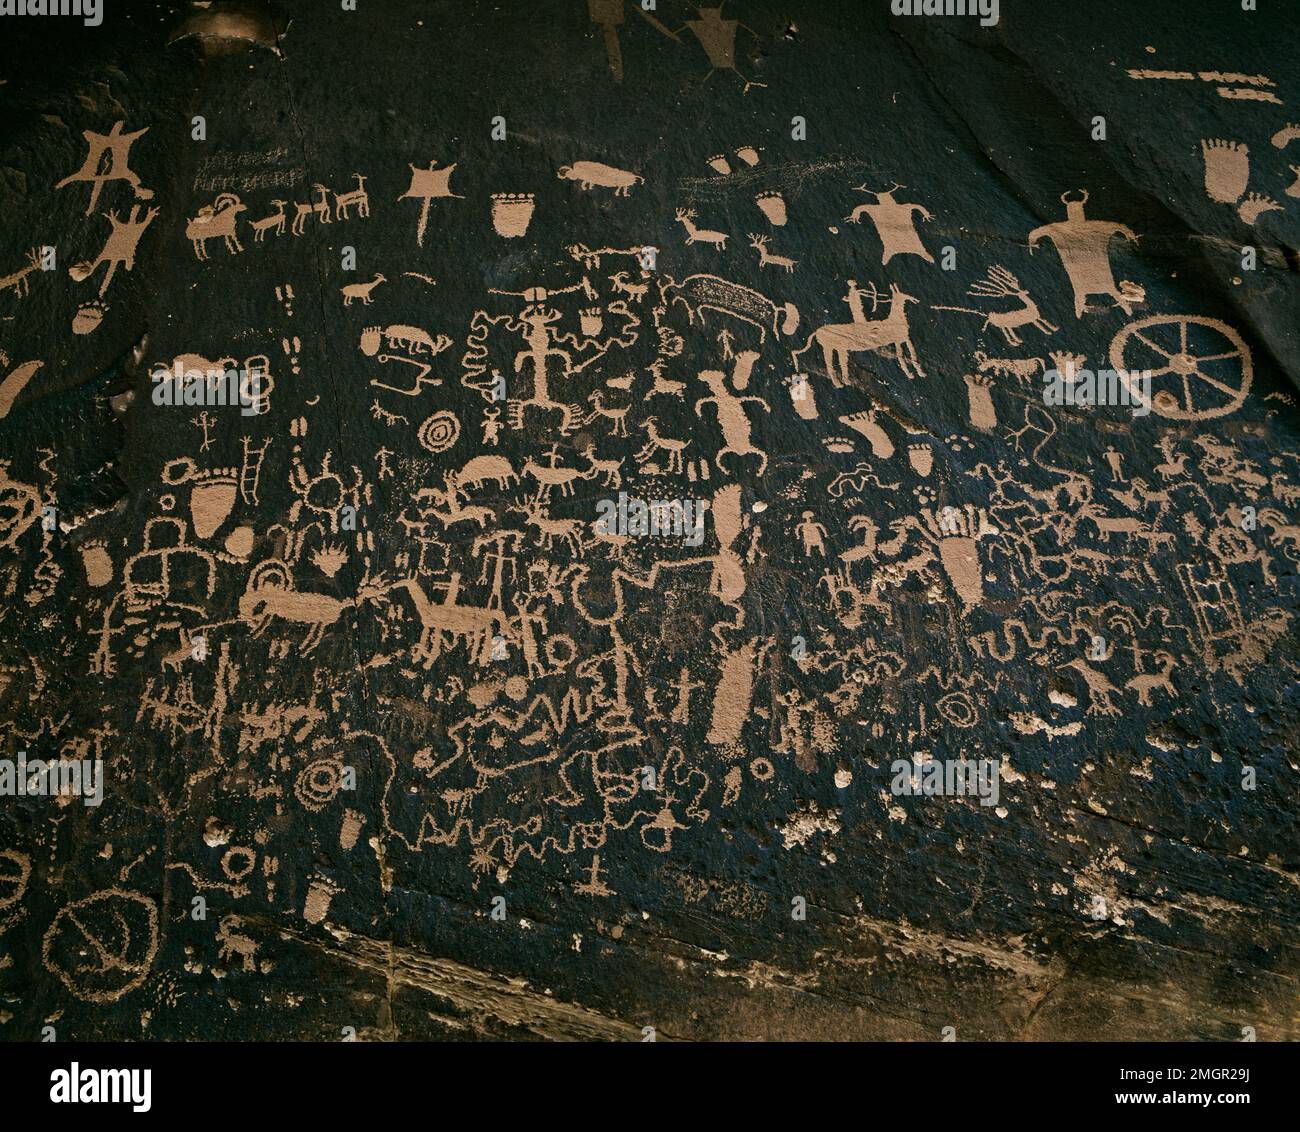 USA, Arizona, versteinerter Nationalpark. Die archäologische Stätte, auch bekannt als Newspaper Rock. Petroglyph-Zeichnungen, die 2.000 Jahre alt sind. Stockfoto